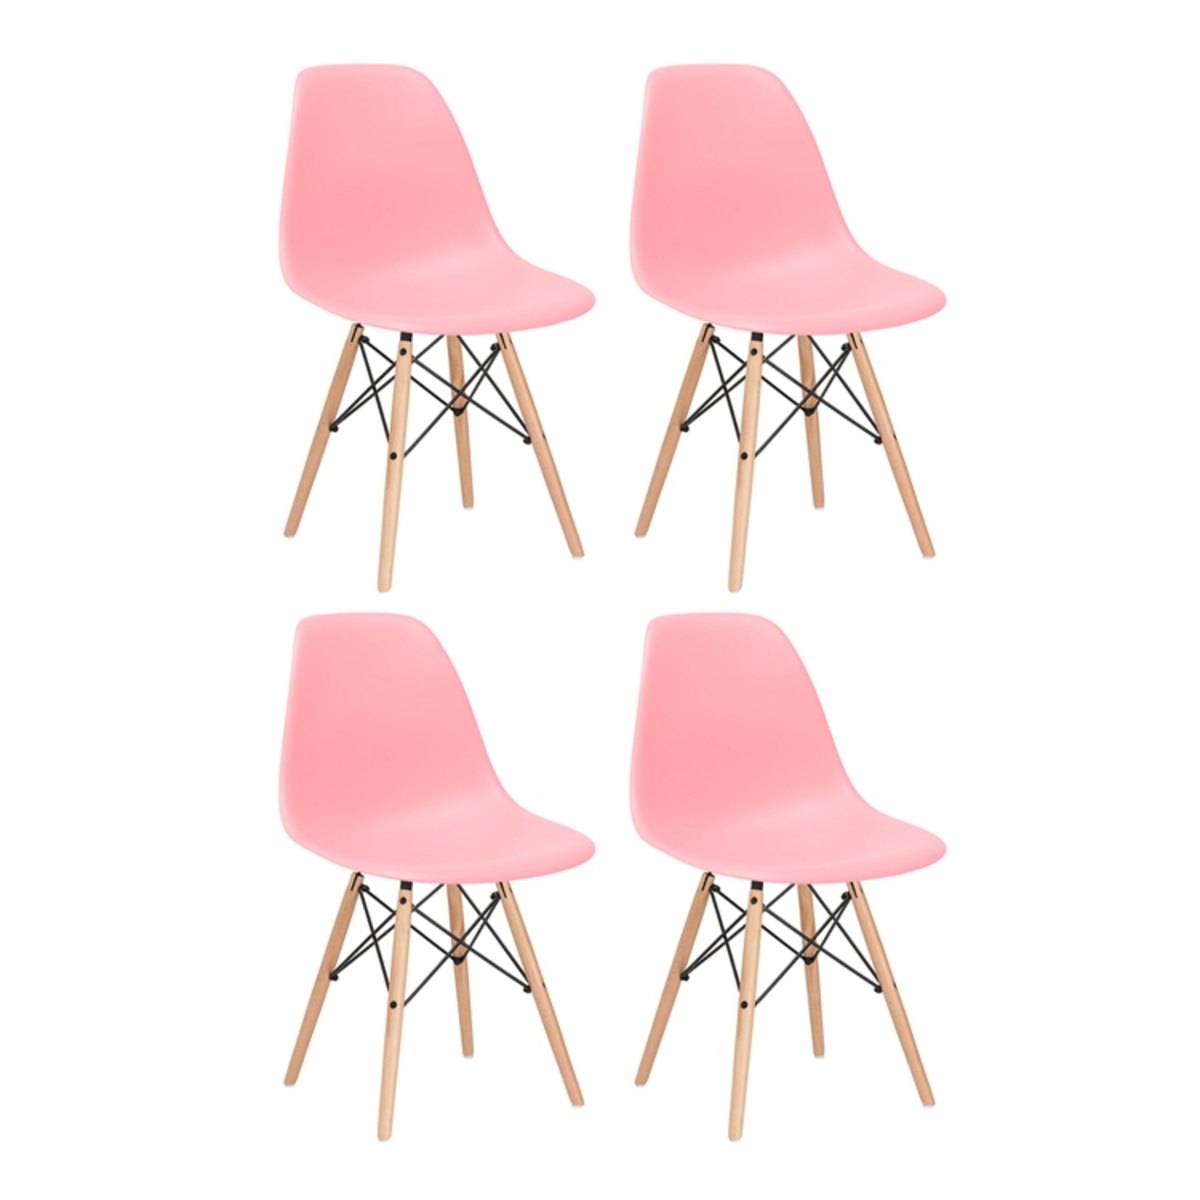 KIT - 4 x cadeiras Eames DSW - Madeira clara - Rosa